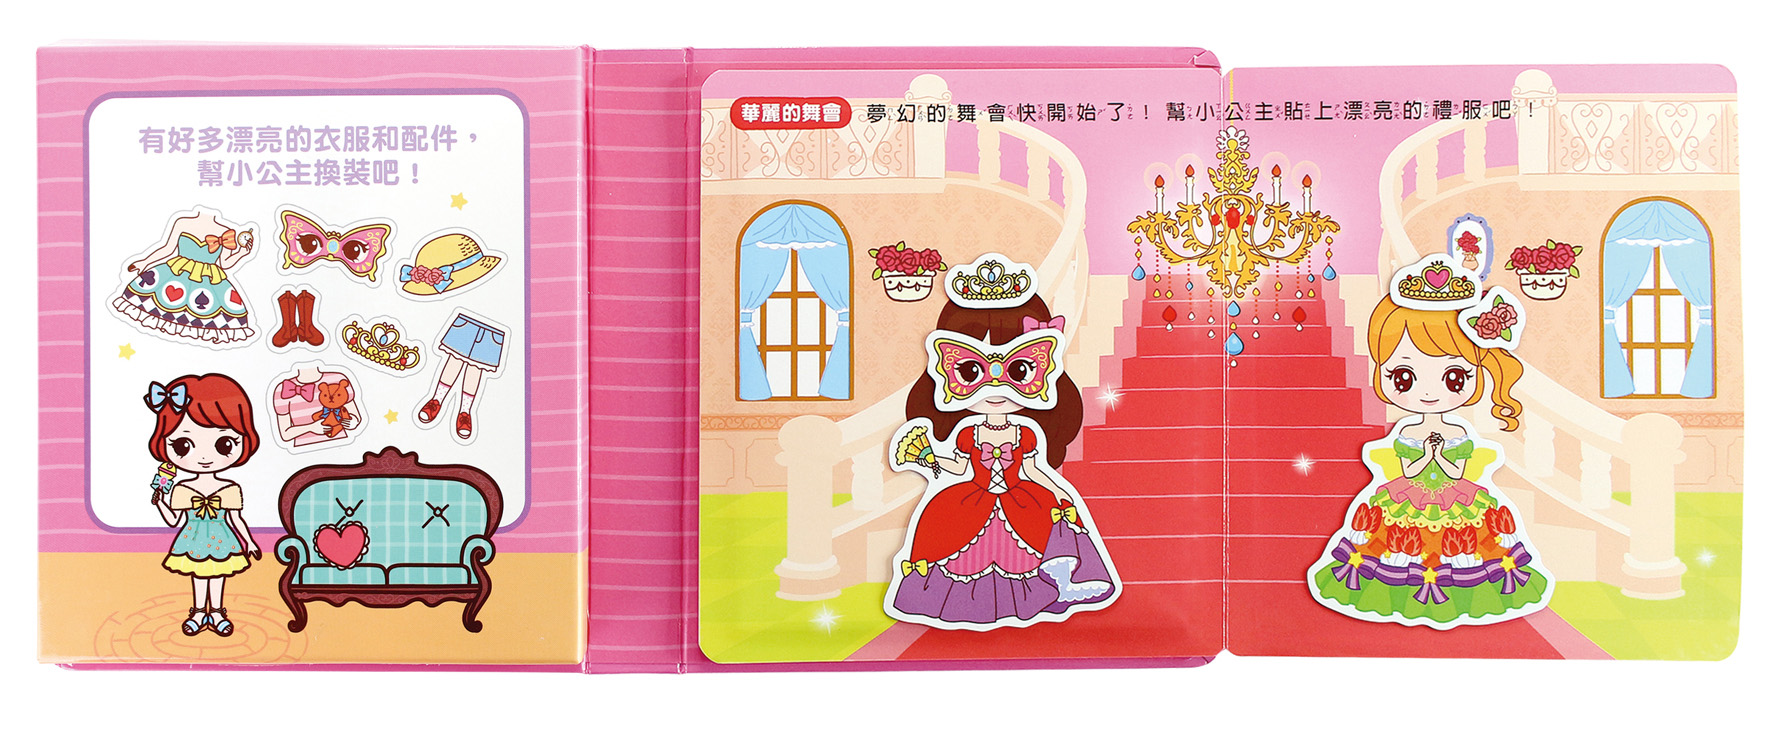 好玩公主變裝-FOOD超人磁貼遊戲盒